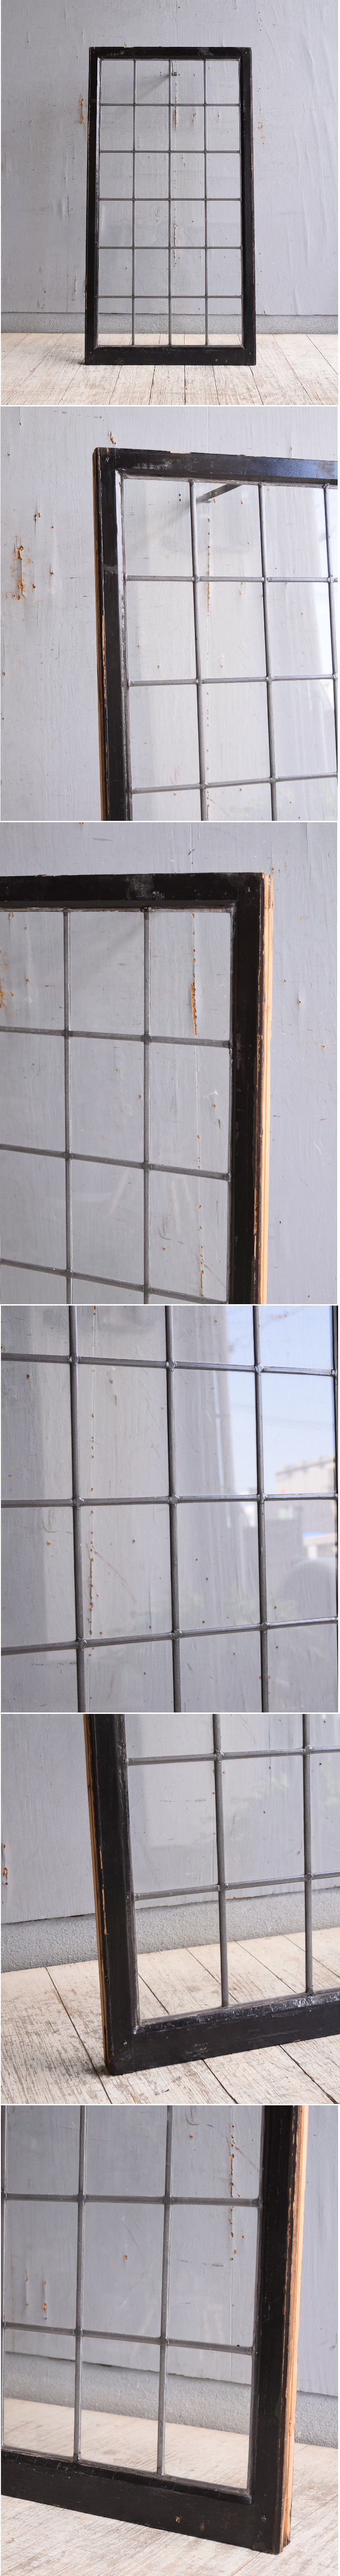 イギリス アンティーク 窓 無色透明 10098